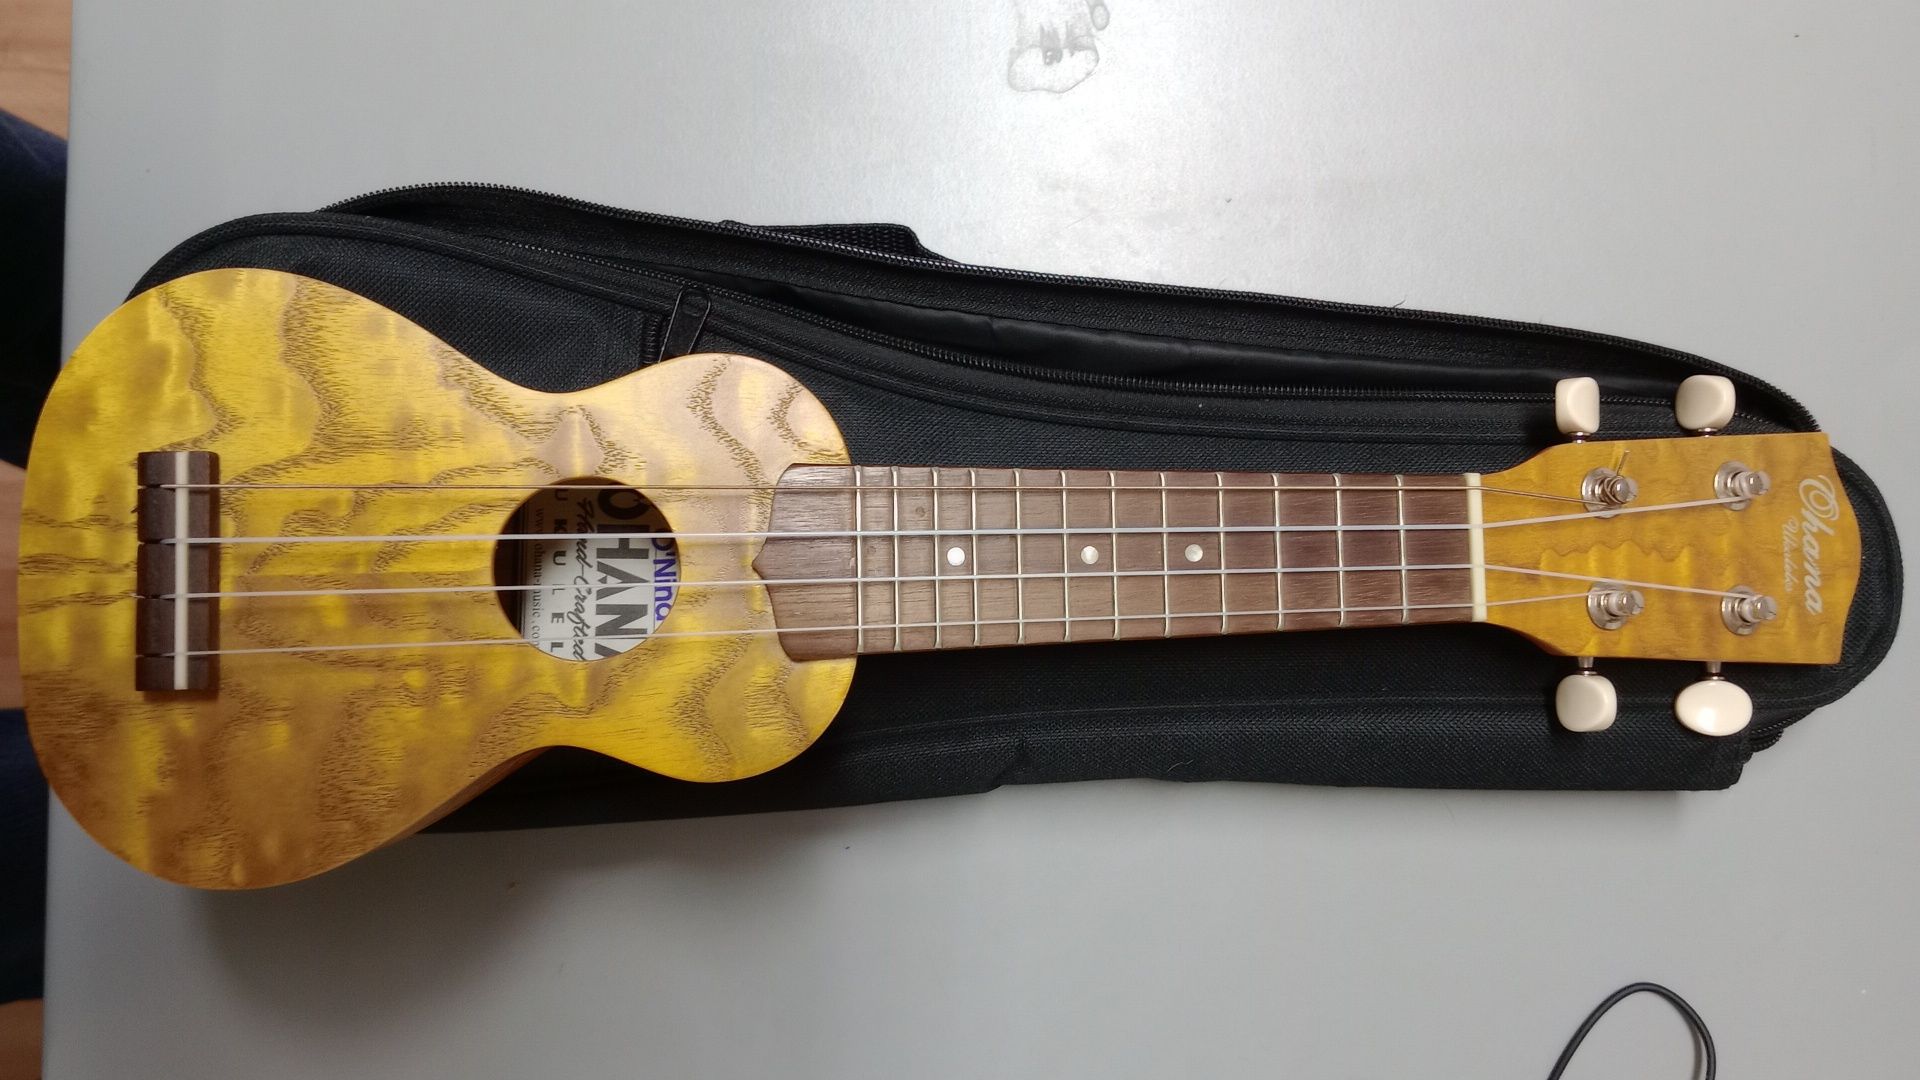 Ohana o'nina sopranissimo ukulele